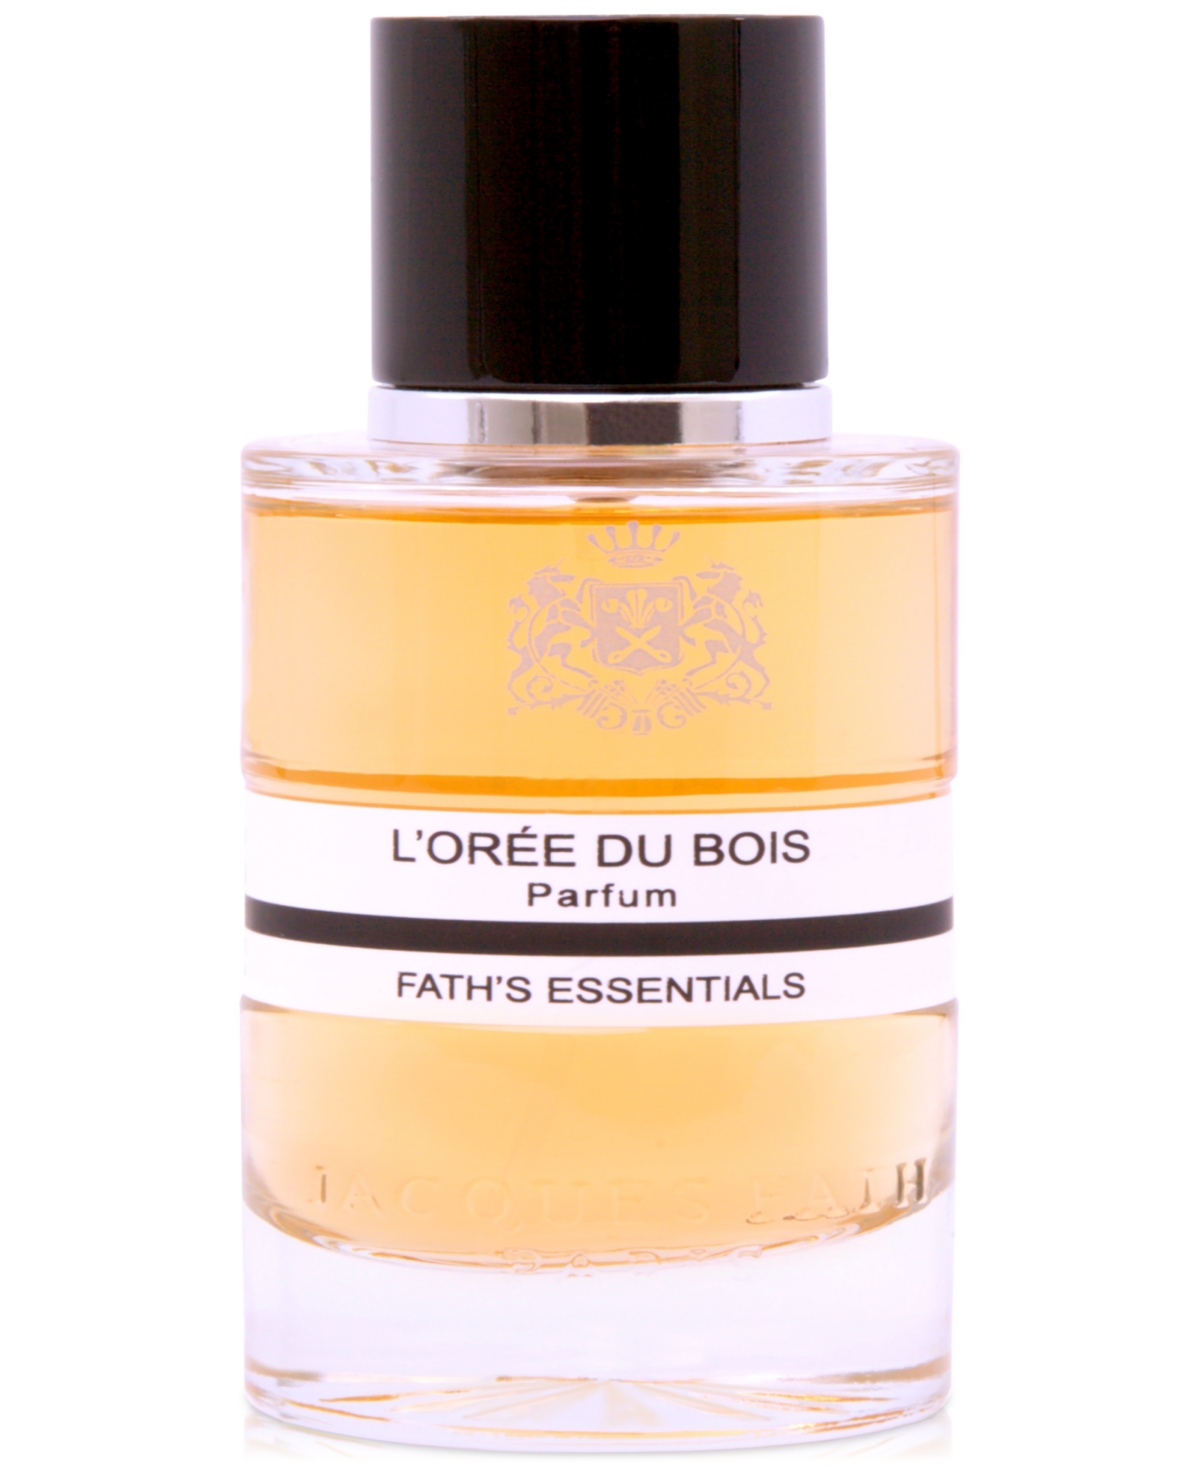 L'Oree du Bois Parfum, 3.4 oz.